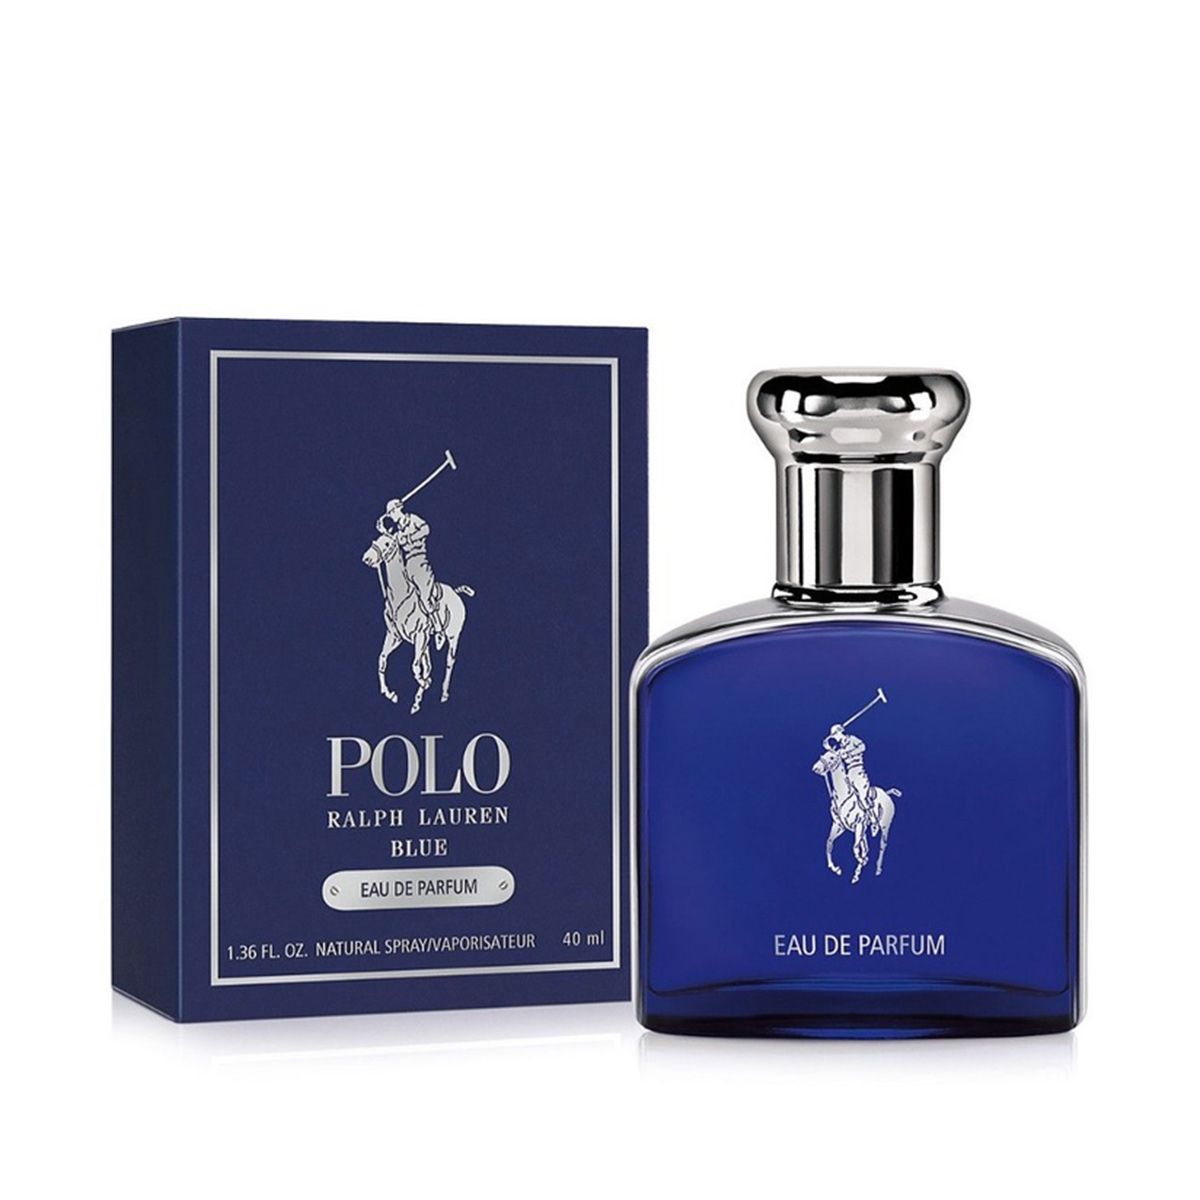  Ralph Lauren Polo Blue Eau de Parfum 